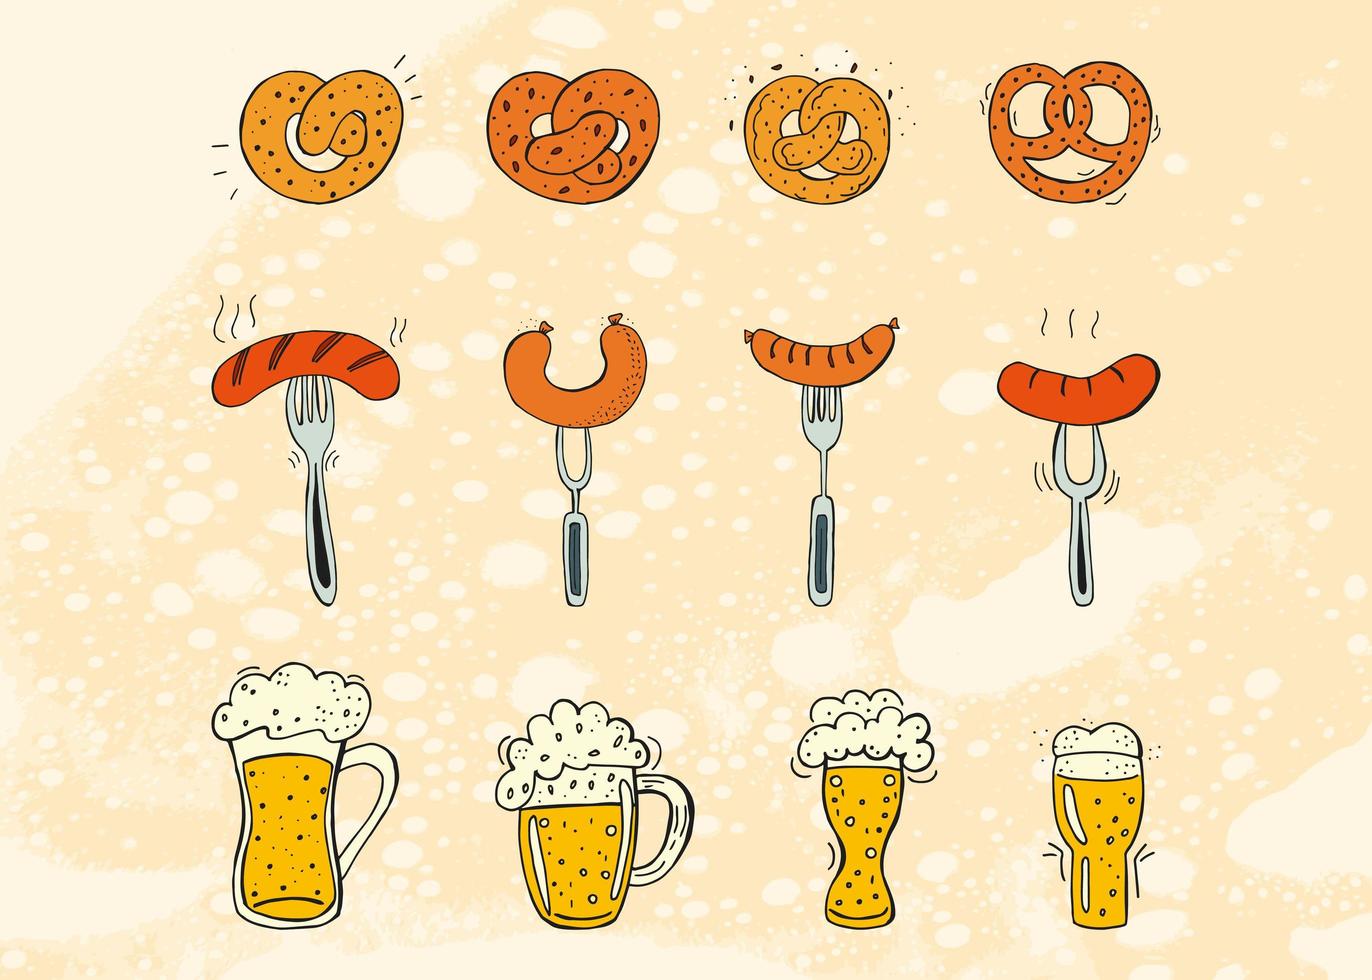 oktoberfest 2022 - festa della birra. elementi di doodle disegnati a mano. festa tradizionale tedesca. festa di ottobre, birra artigianale. rombo bianco-blu. insieme di elementi. vettore